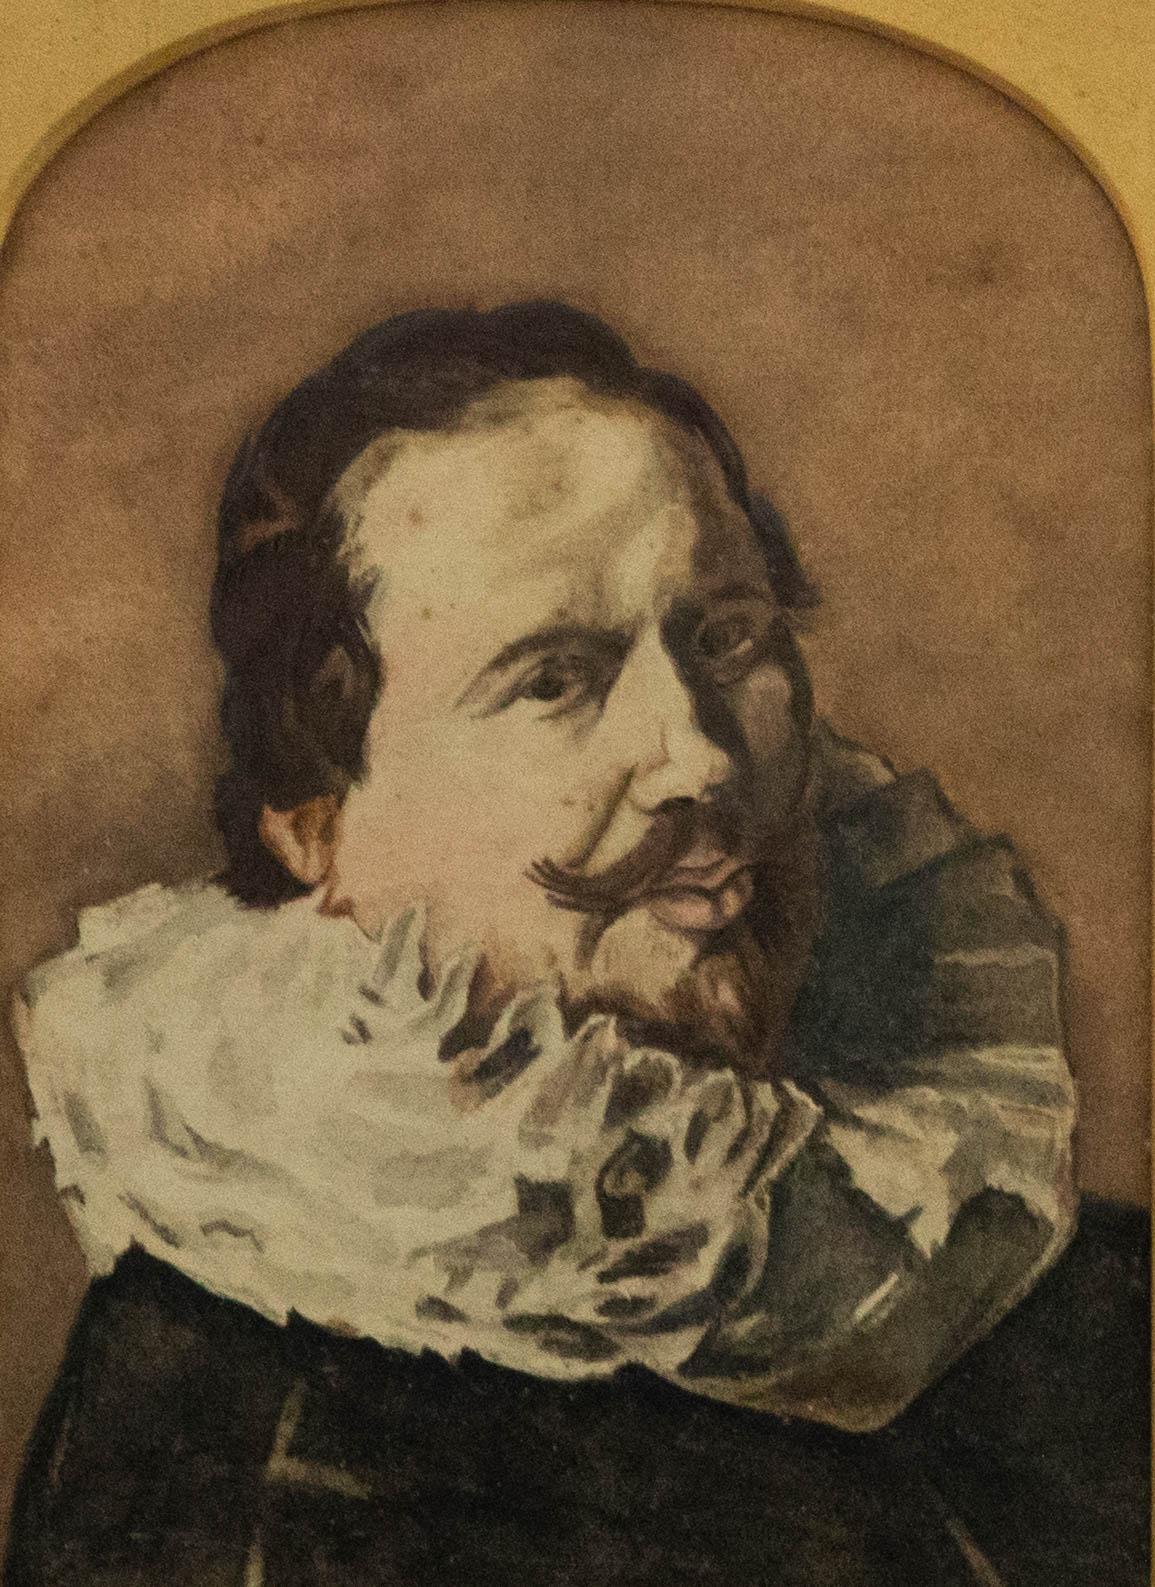 Un charmant Self-Portrait à l'aquarelle. L'artiste semble s'inspirer des autoportraits de Rembrandt, créant une composition intime où le spectateur est confronté au sujet. Magnifiquement présenté dans un cadre doré orné de bords arrondis et de fins